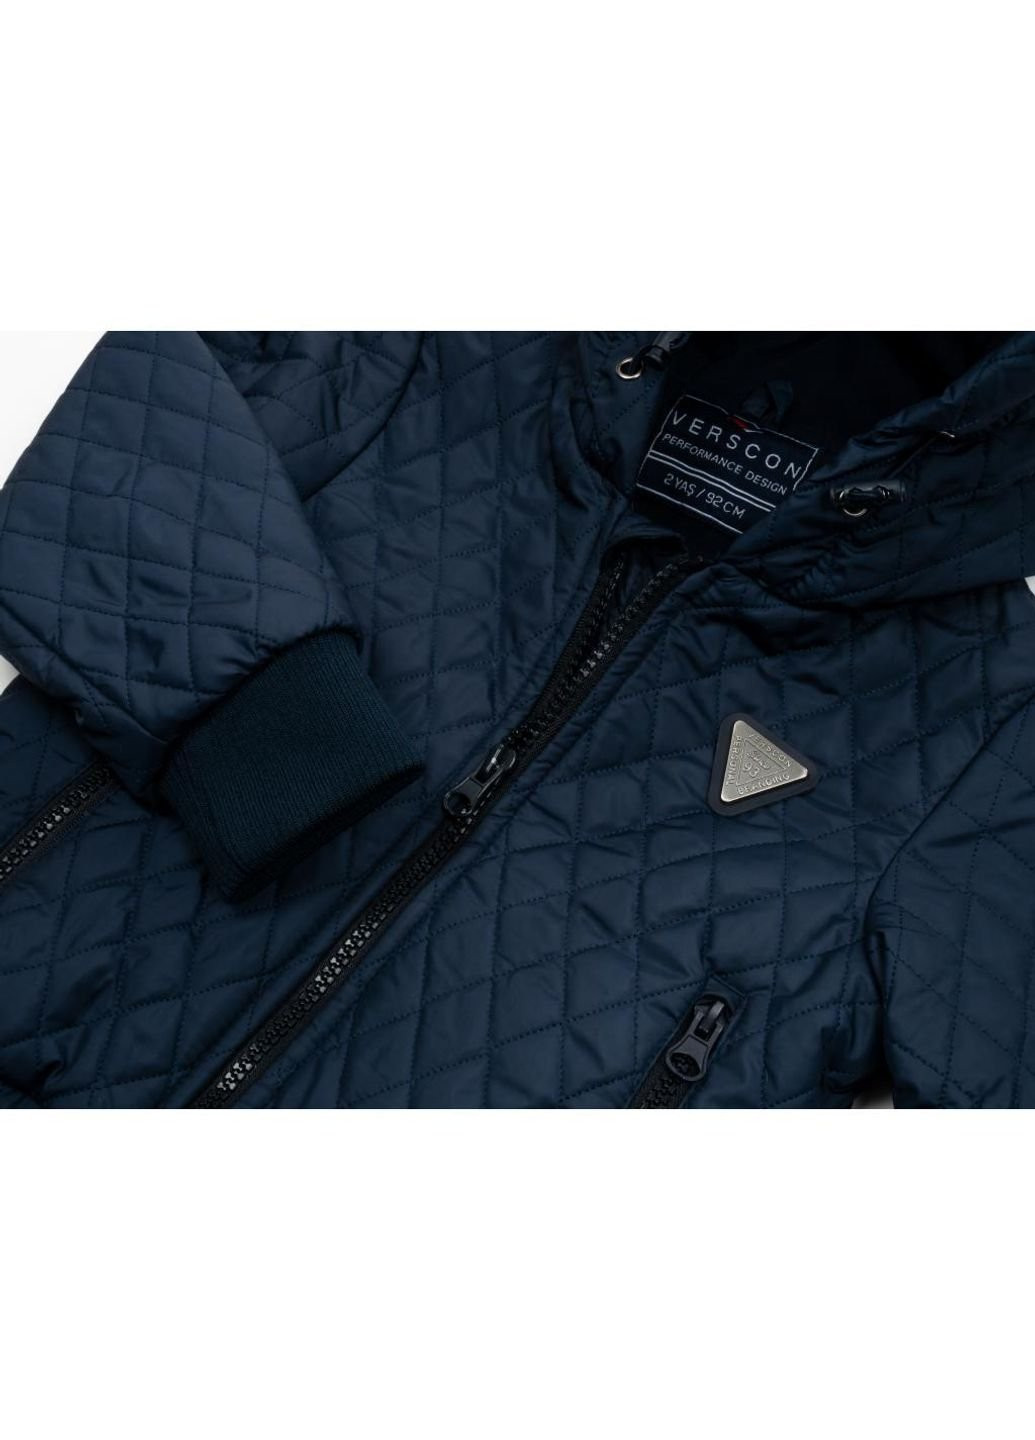 Темно-синяя демисезонная куртка стеганая (3439-92b-blue) Verscon